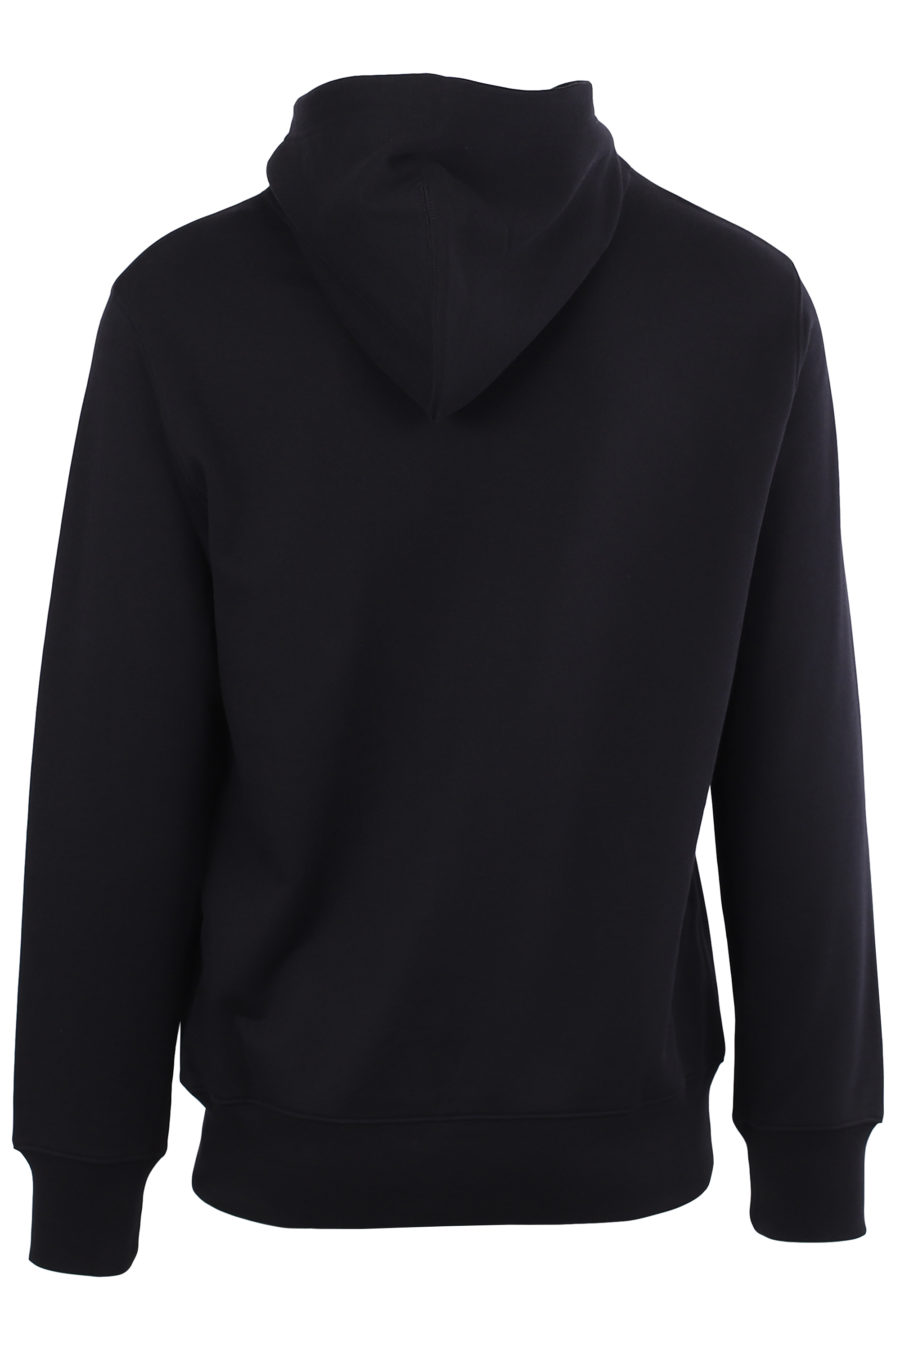 Black sweatshirt logo "Smiley" - IMG 0016